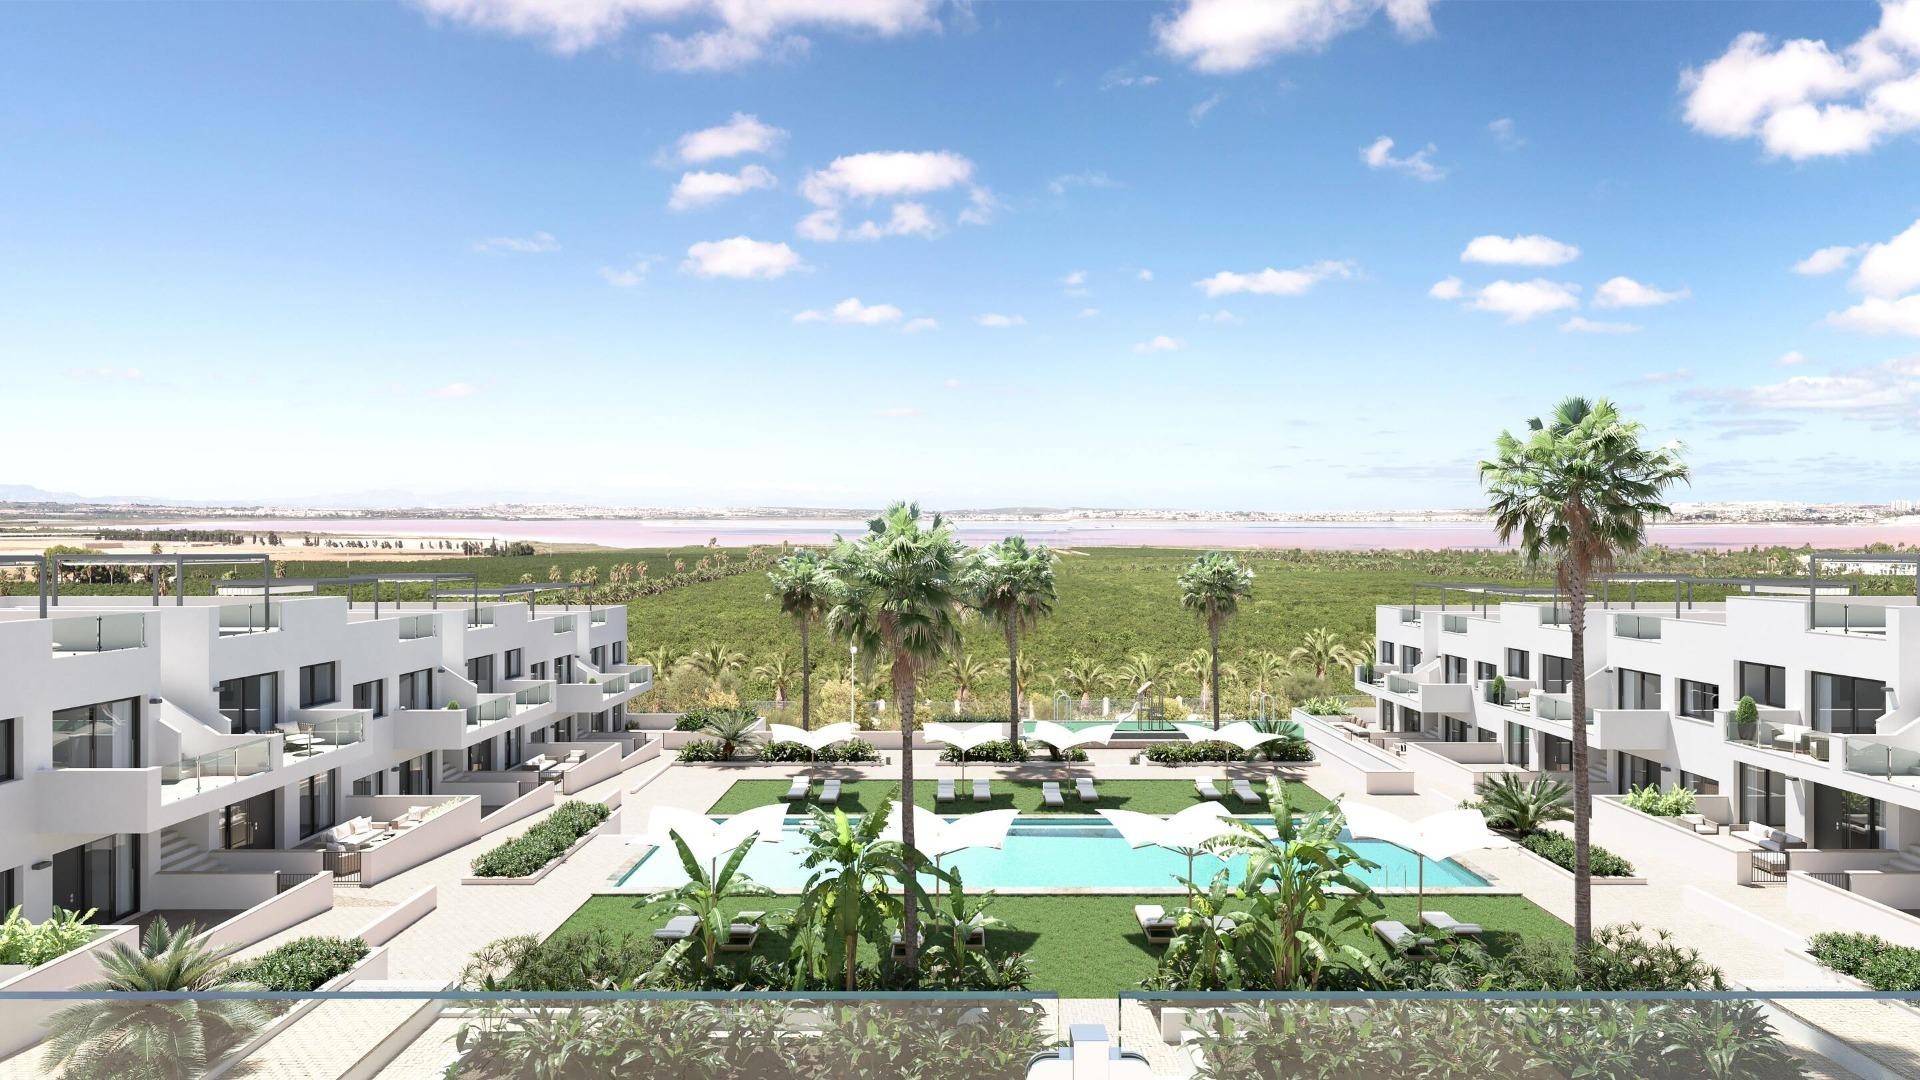 Helt nye bungalow-leiligheter i Los Balcones, Torrevieja, 2/3 soverom, 2 bad, flott bassengområde med hage, spektakulær utsikt over rosa lagune